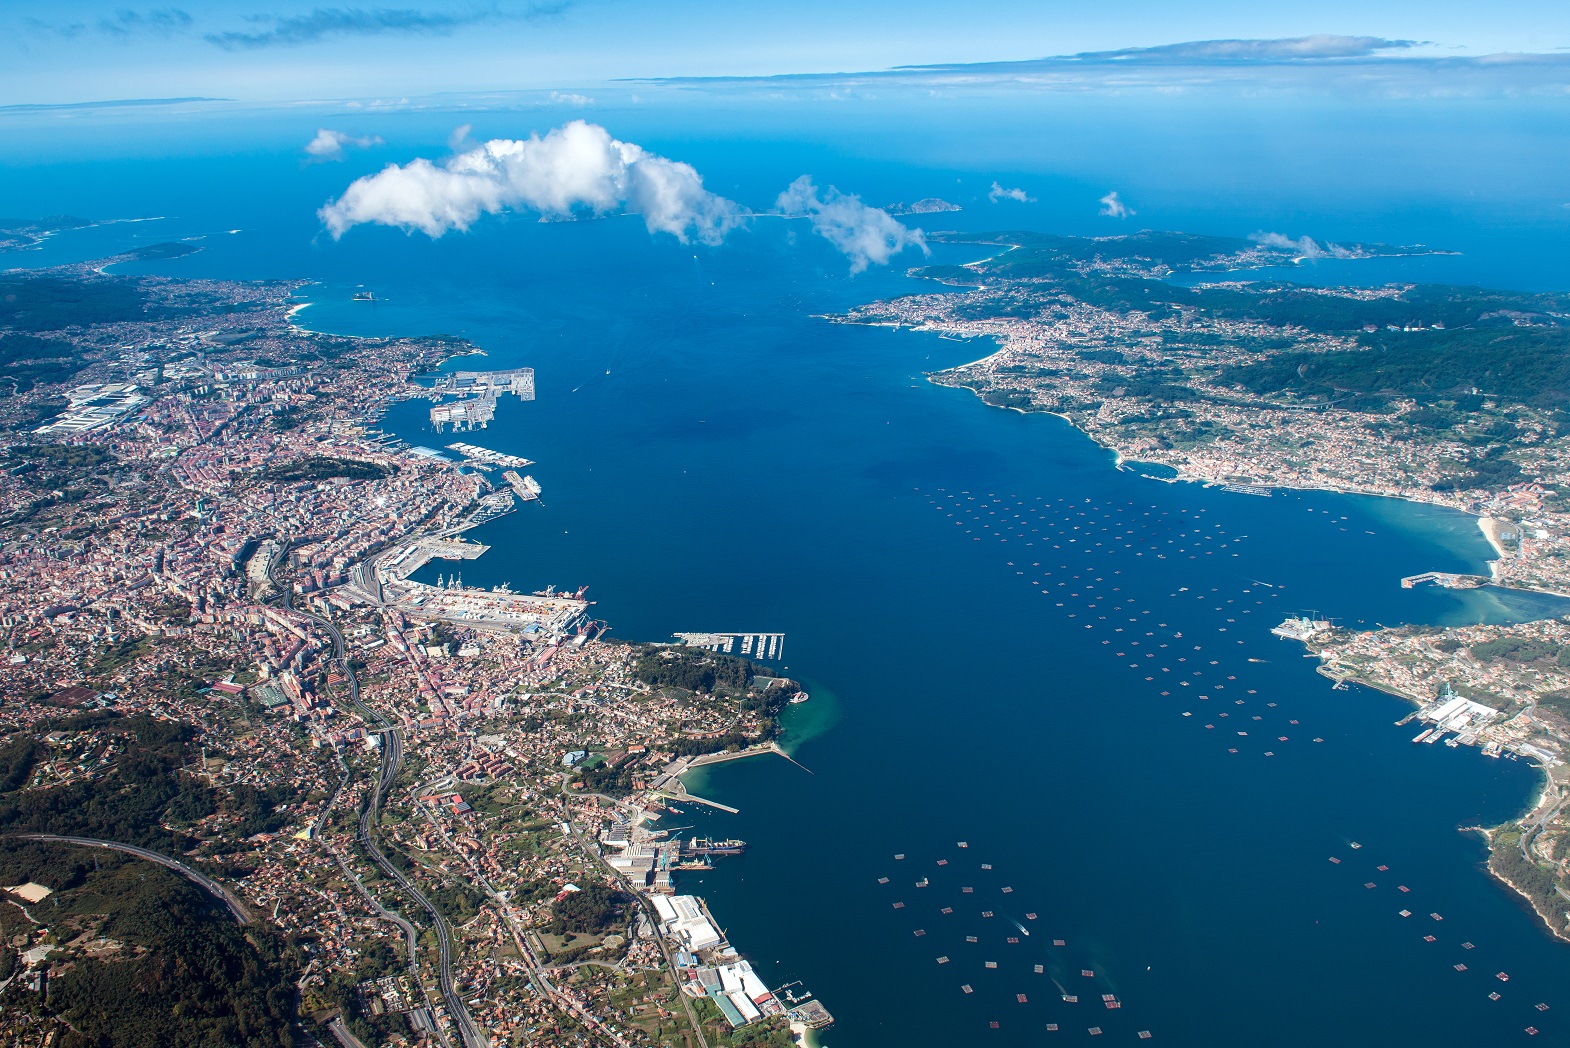 Foto aerea de la ría de Vigo